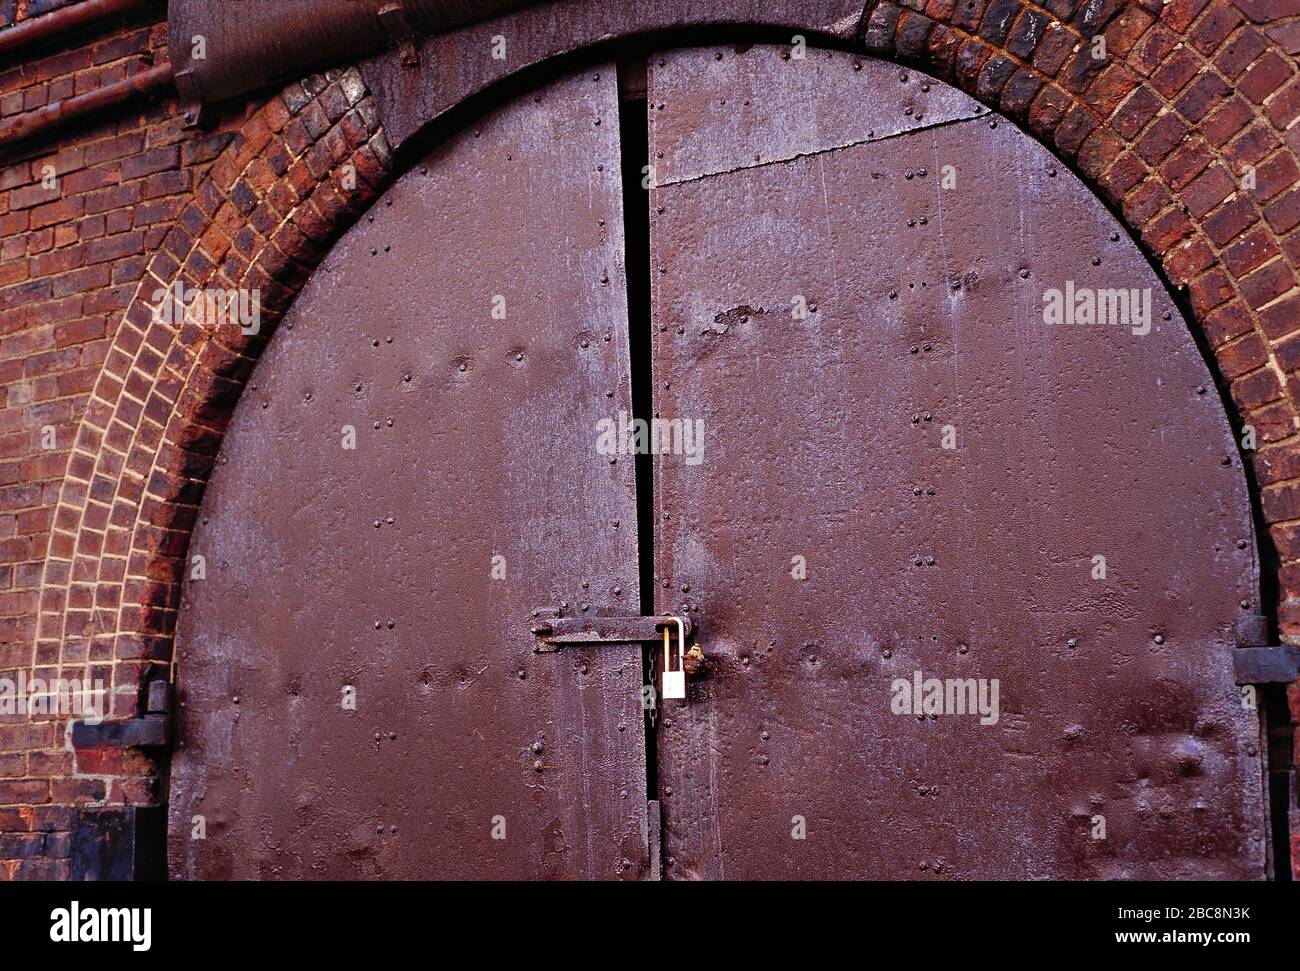 Architektur. Eisenbahnbogen aus viktorianischem Backstein. Rostige, mit einem Vorhängeschloss verschlossene Tür. Stockfoto